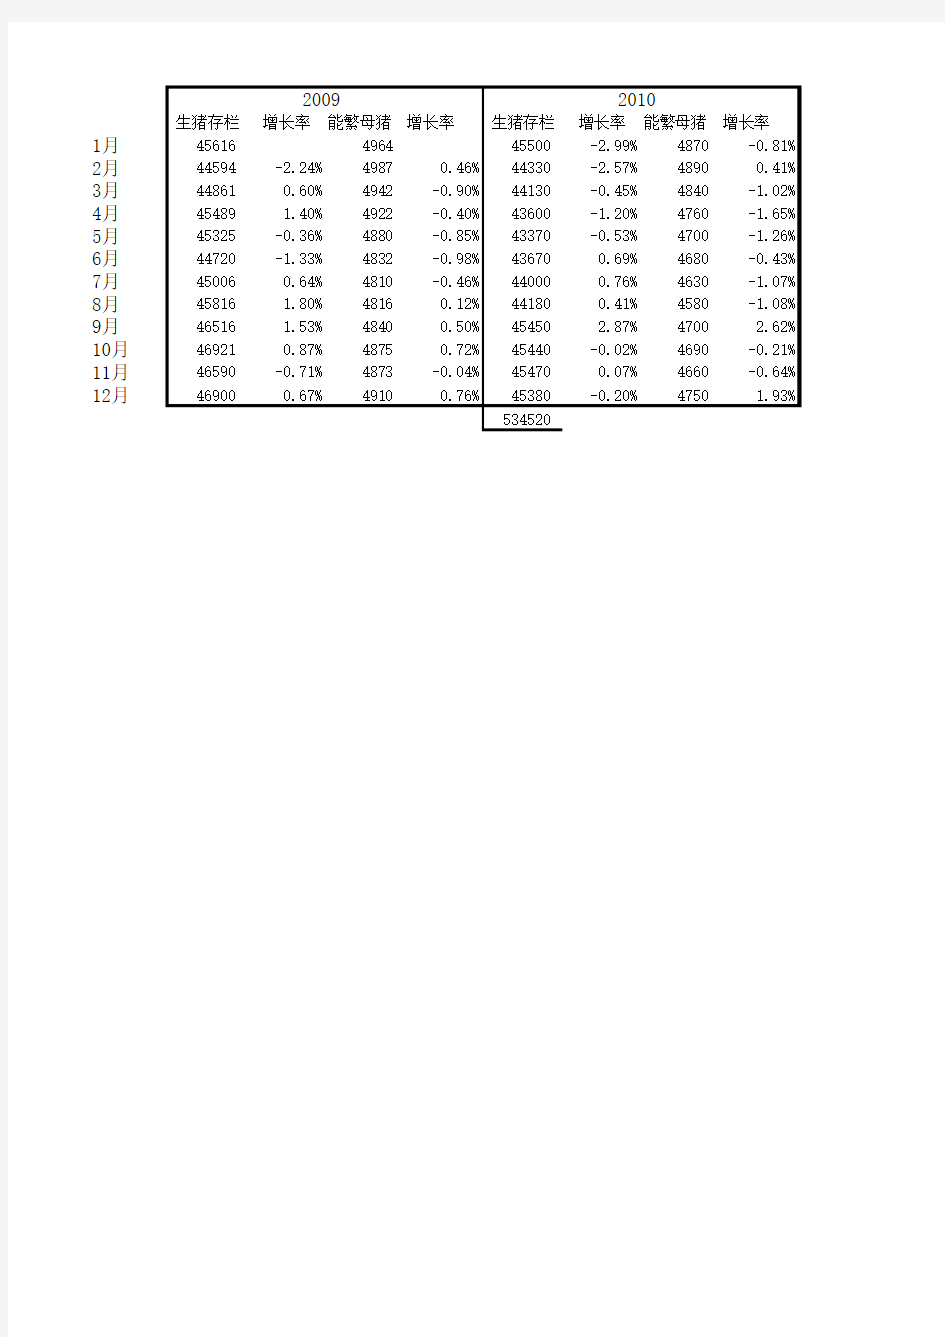 生猪存栏量数据(2009-2017)